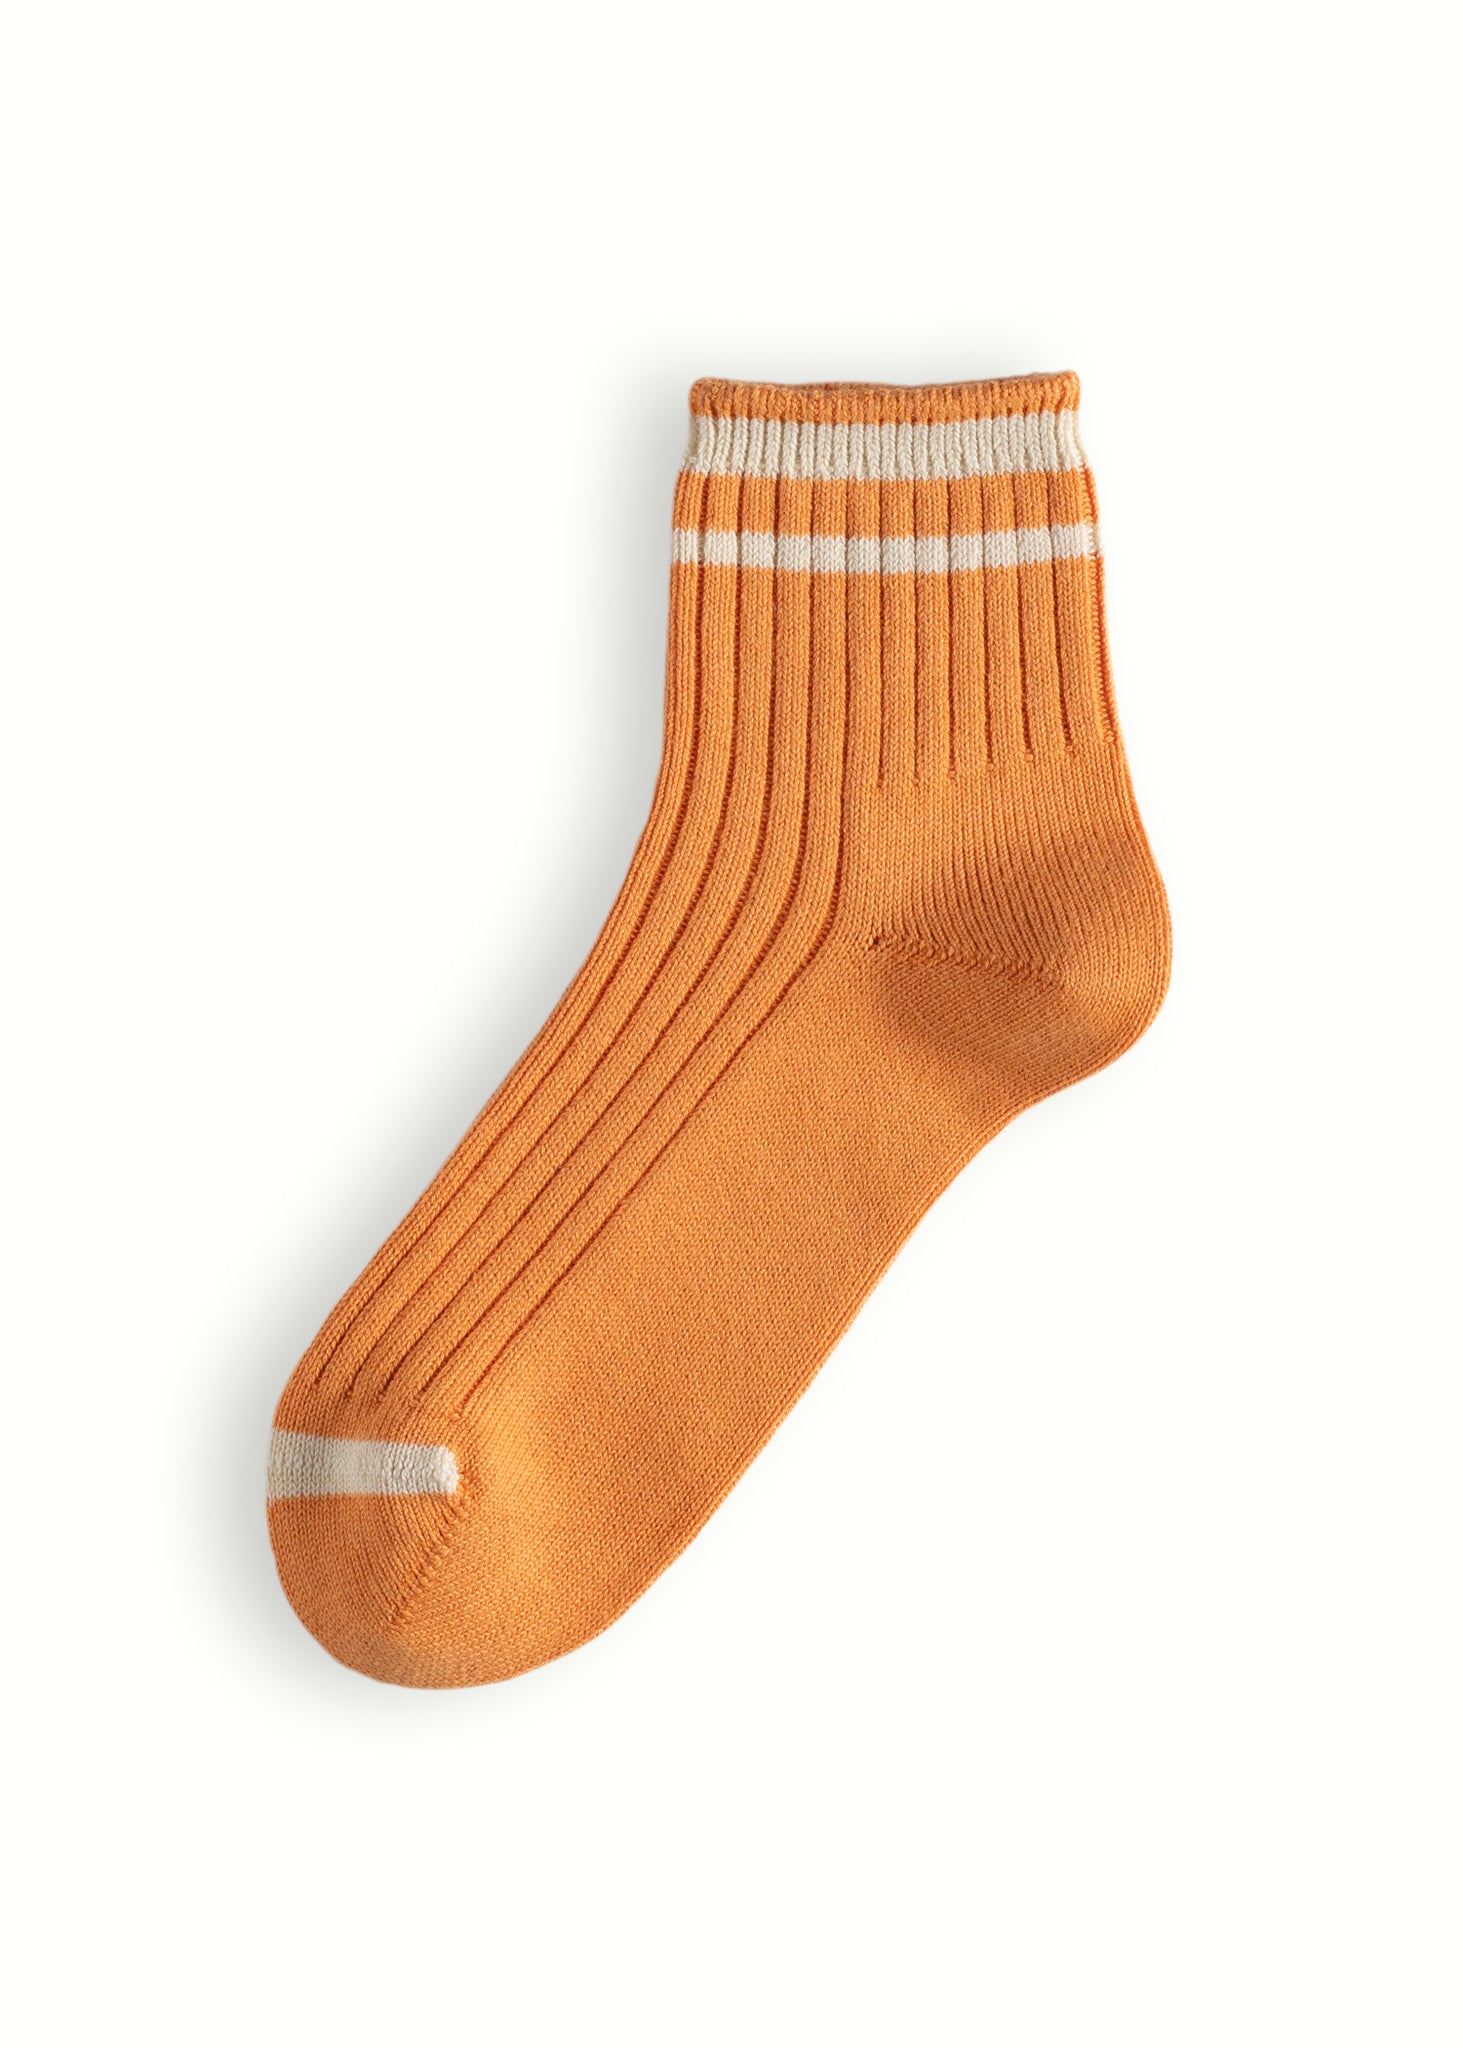 WORKSHOP COLLECTION Cotton Orange Socks